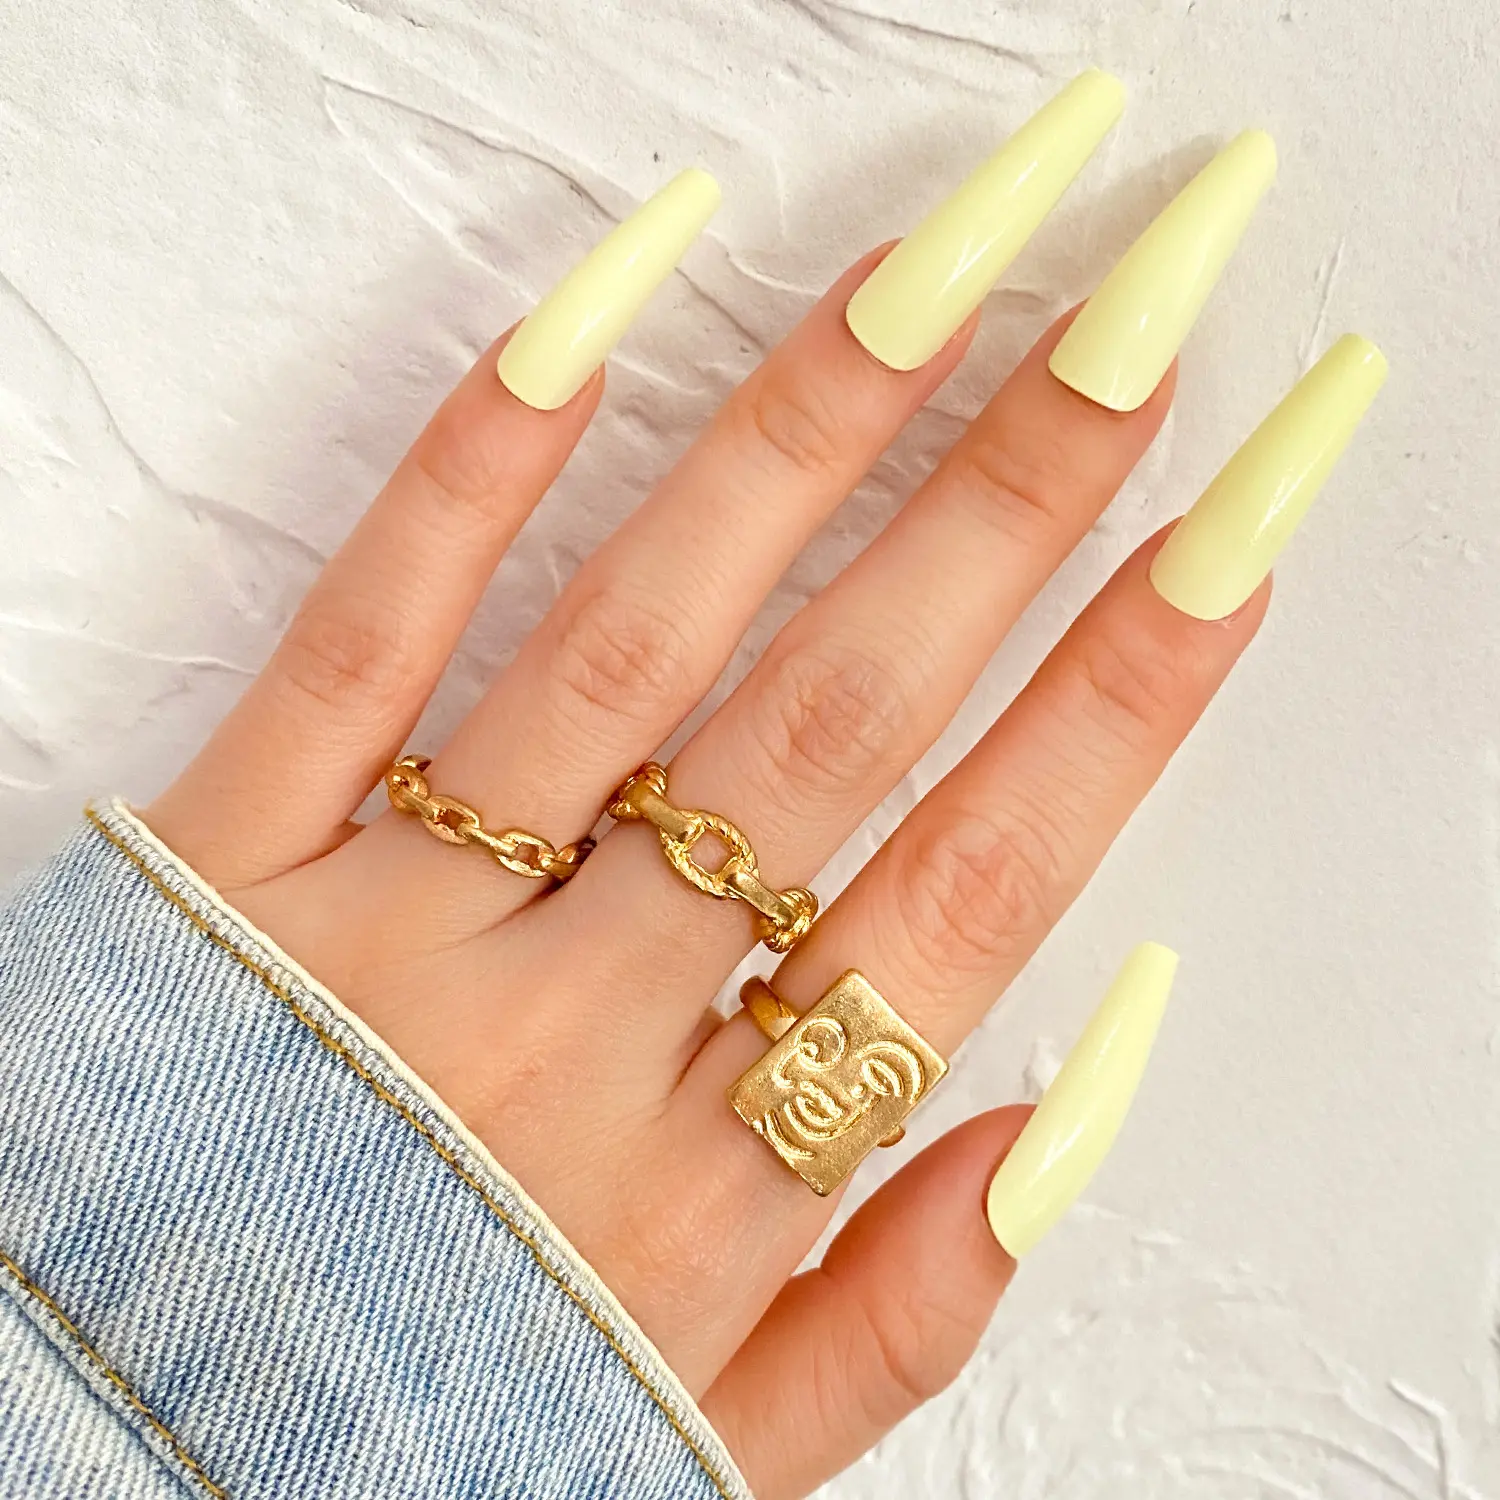 Großhandel New Design Hot Selling Hochwertige Golden Smiley Twist gewebte Ring weibliche Retro minimalist ische vergoldete Ring